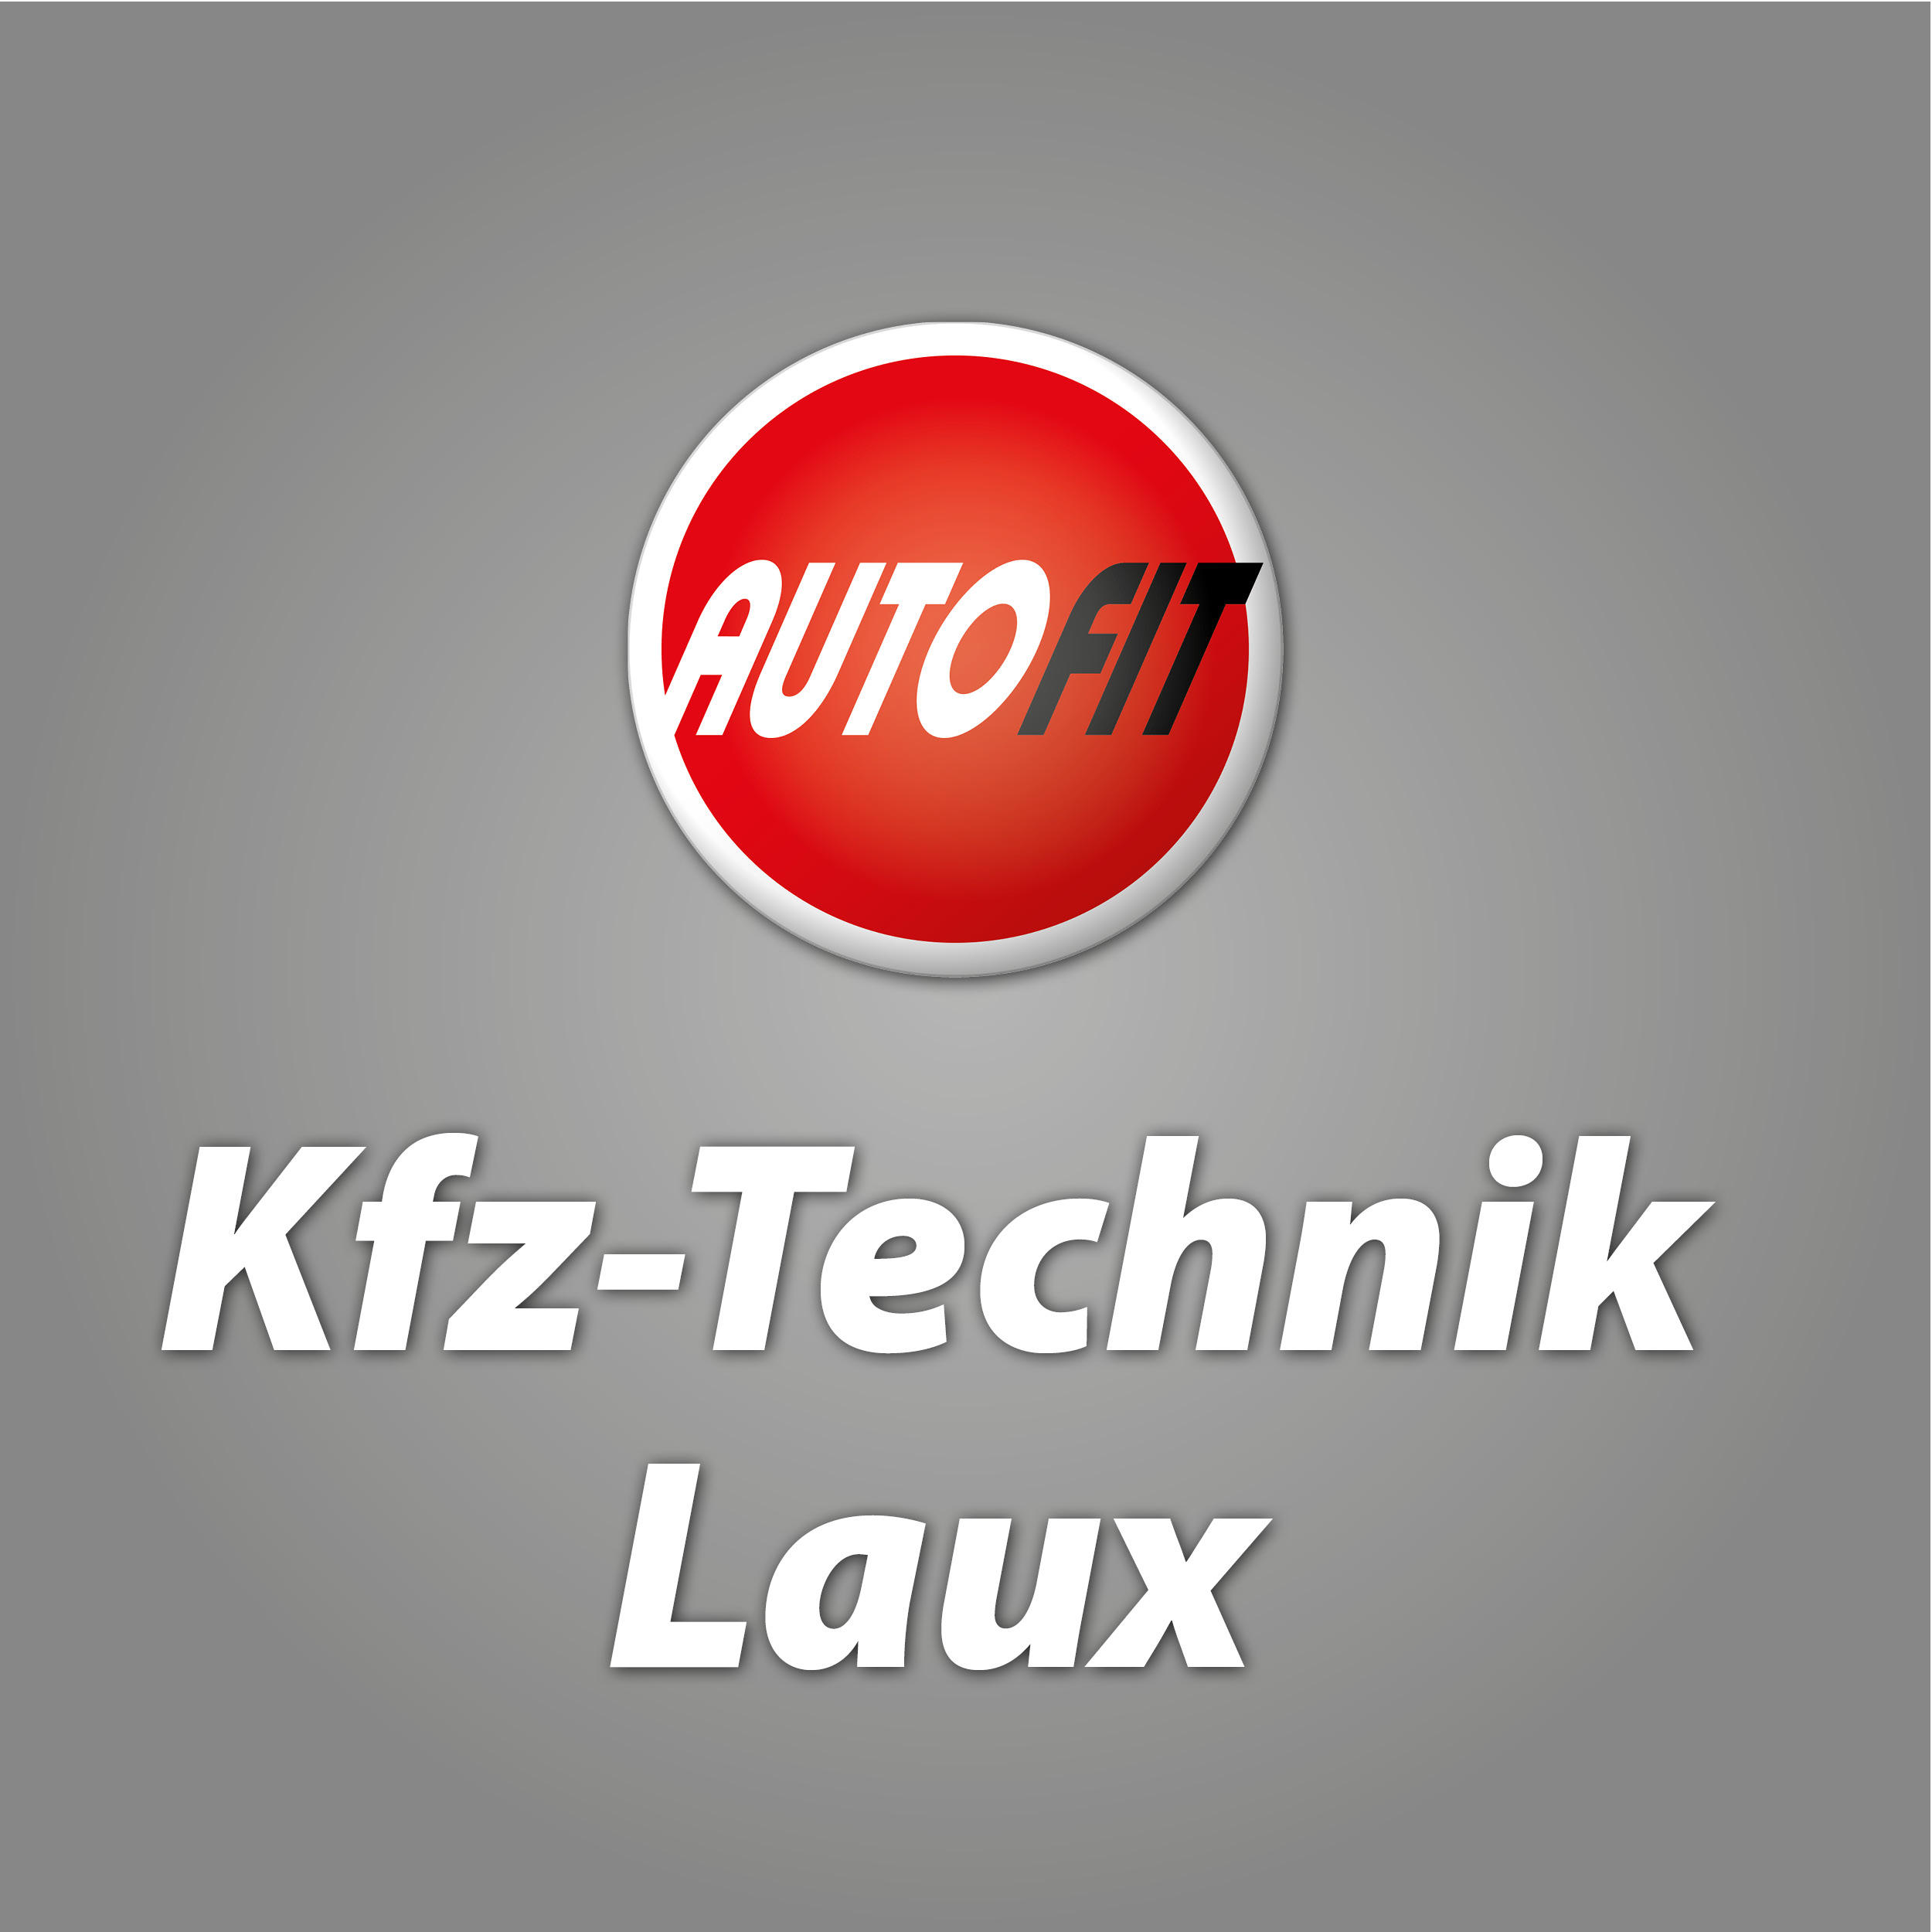 Kfz-Technik Laux in Neuwied - Logo